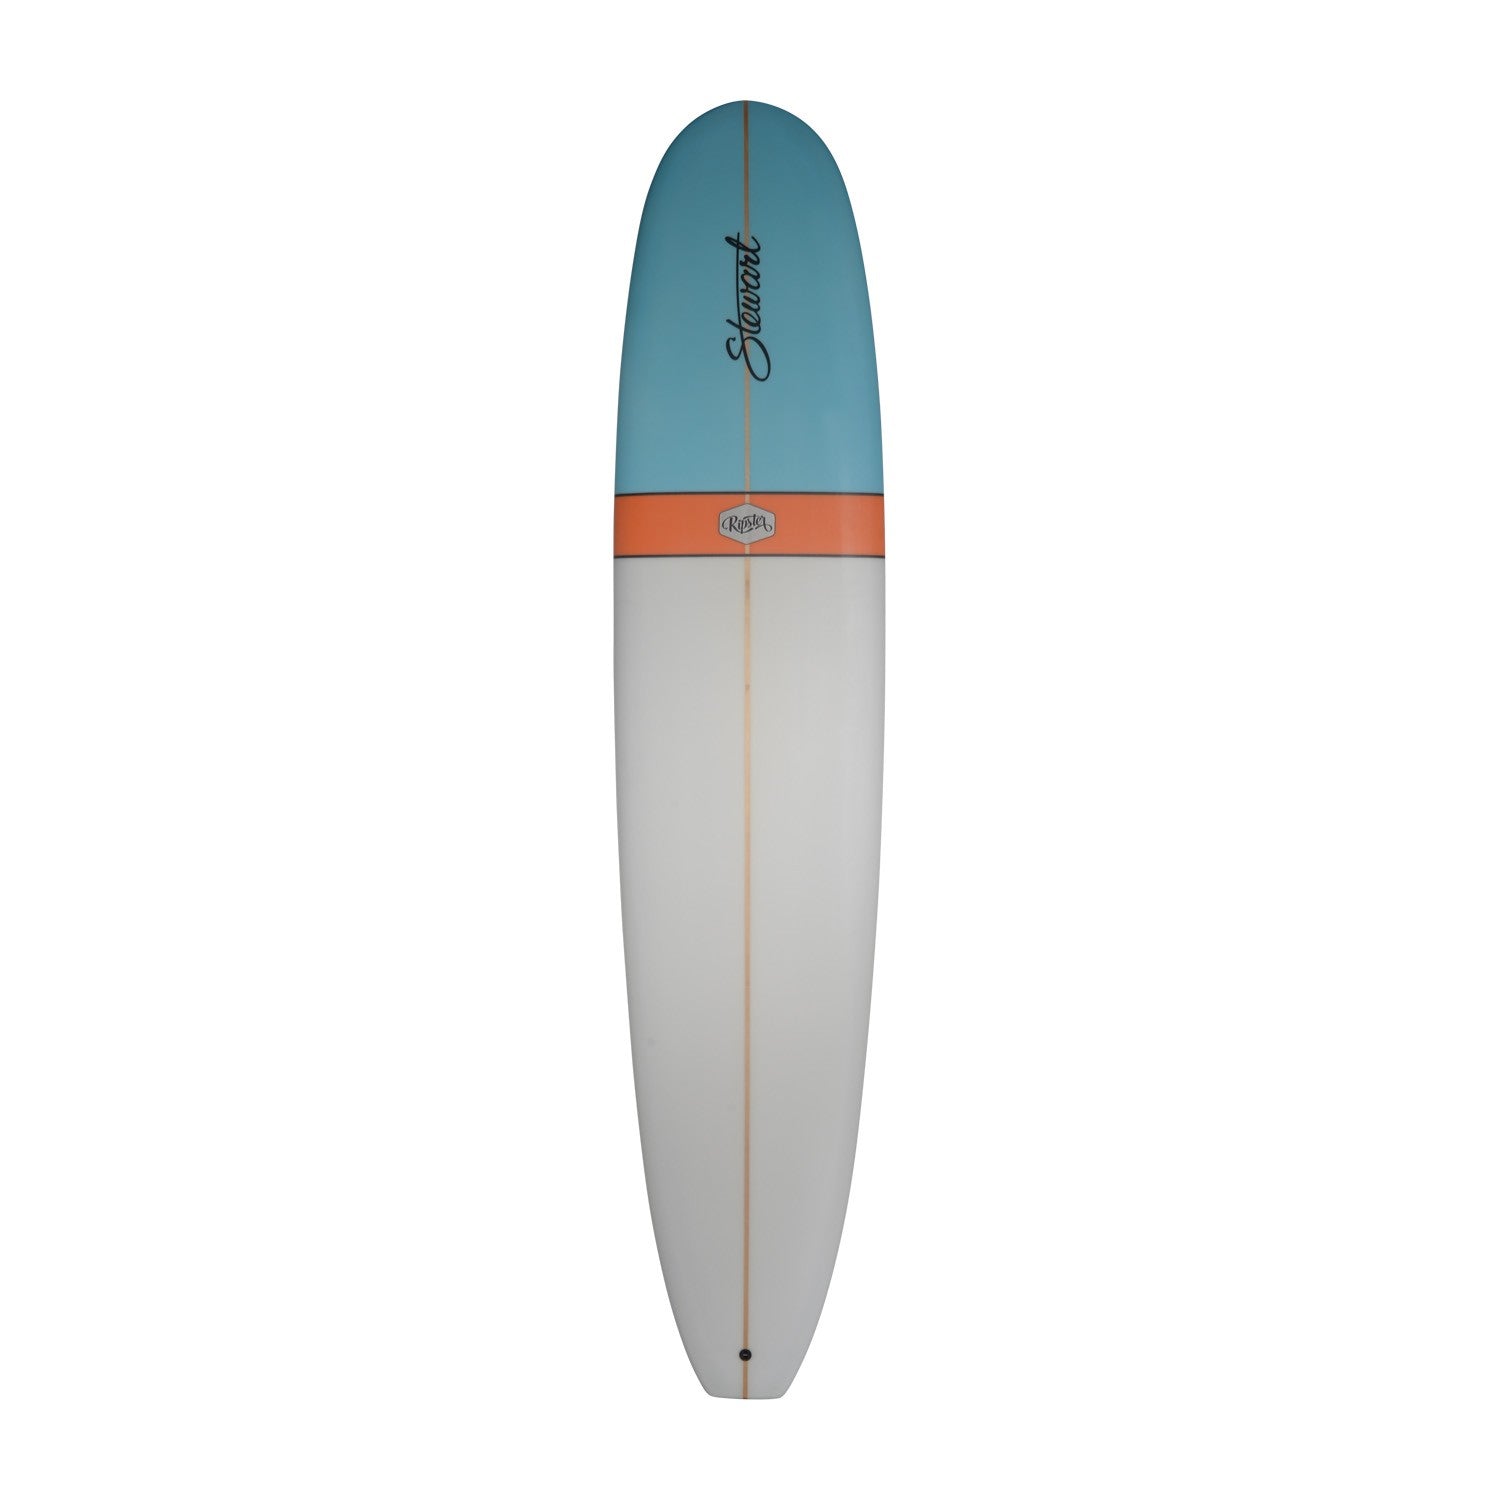 STEWART Surfboards - Ripster 9'2 (PU) - Blue / Orange